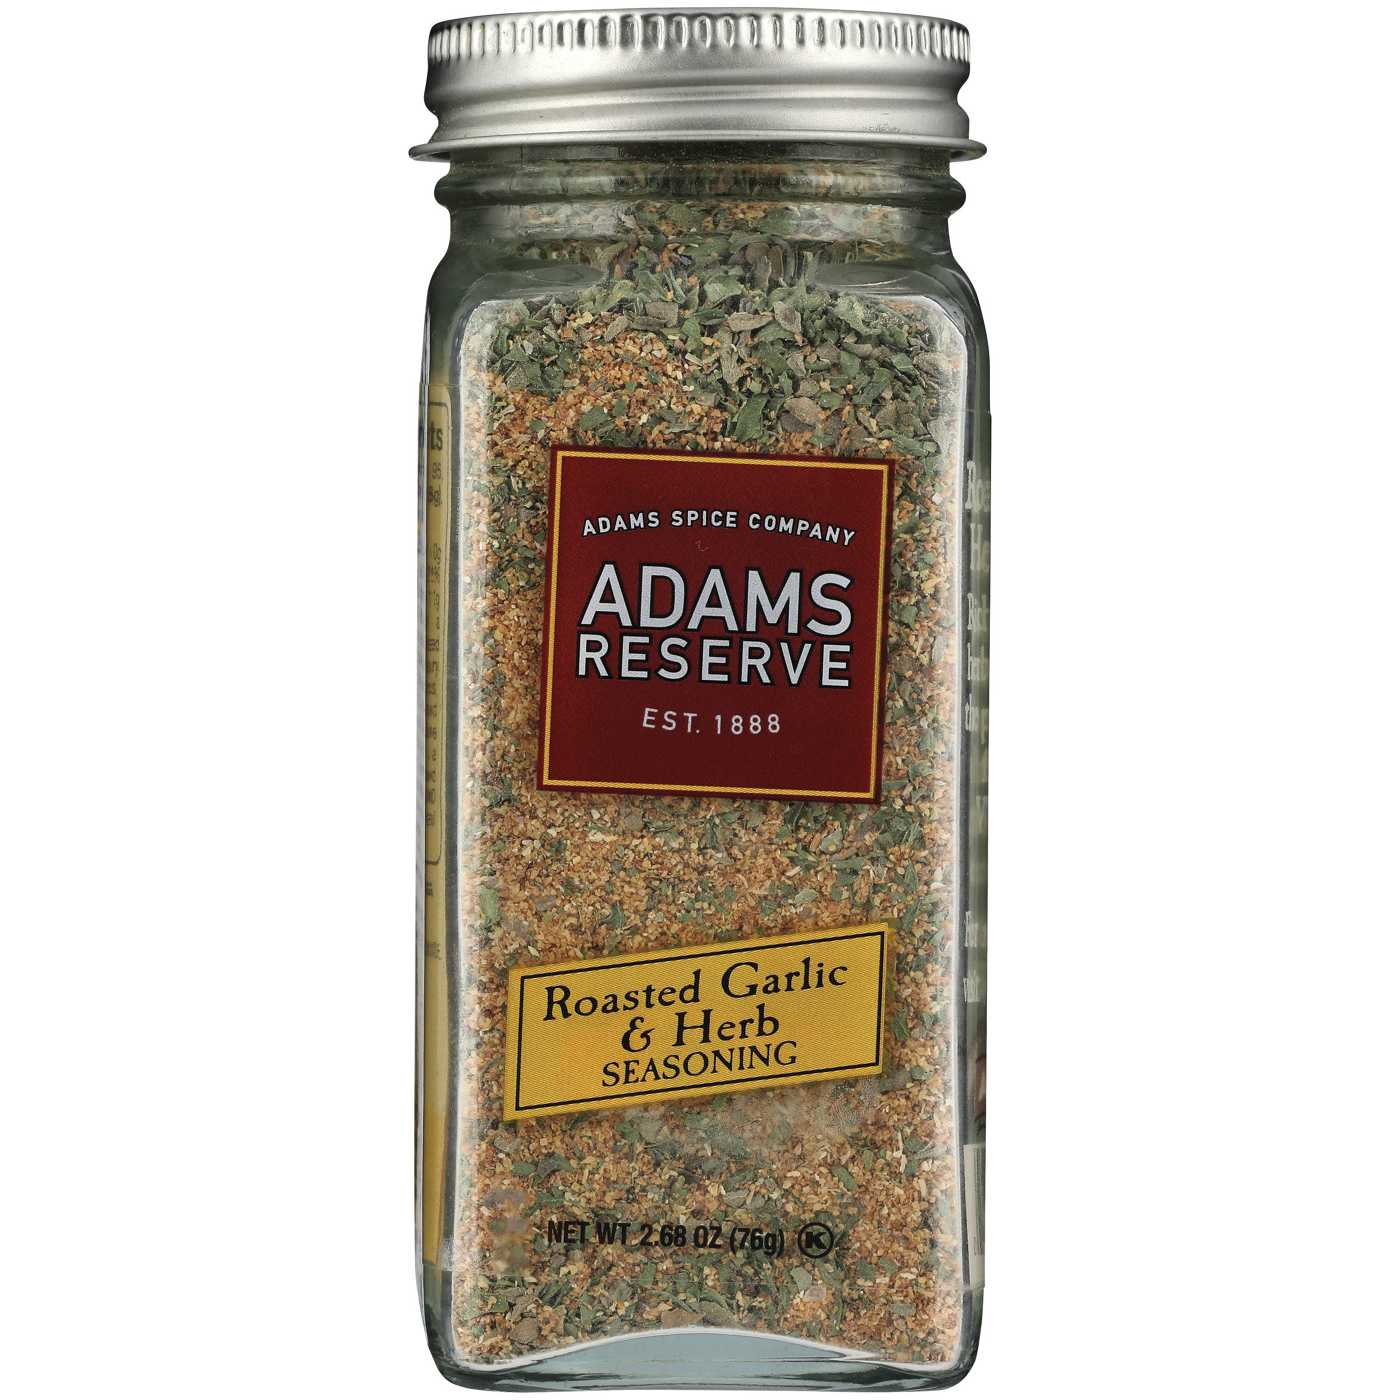 Adams Reserve Roasted Garlic & Herb Seasoning; image 1 of 2